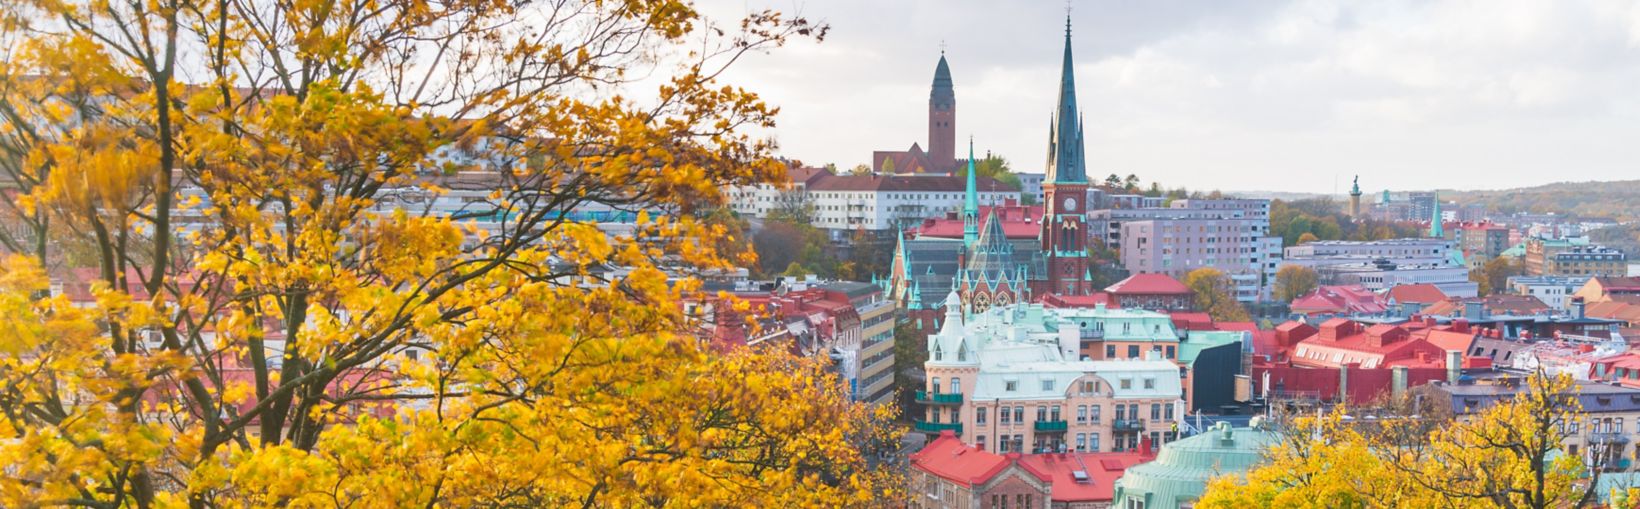 Stadt Göteborg hinter einem Hügel an einem Herbsttag